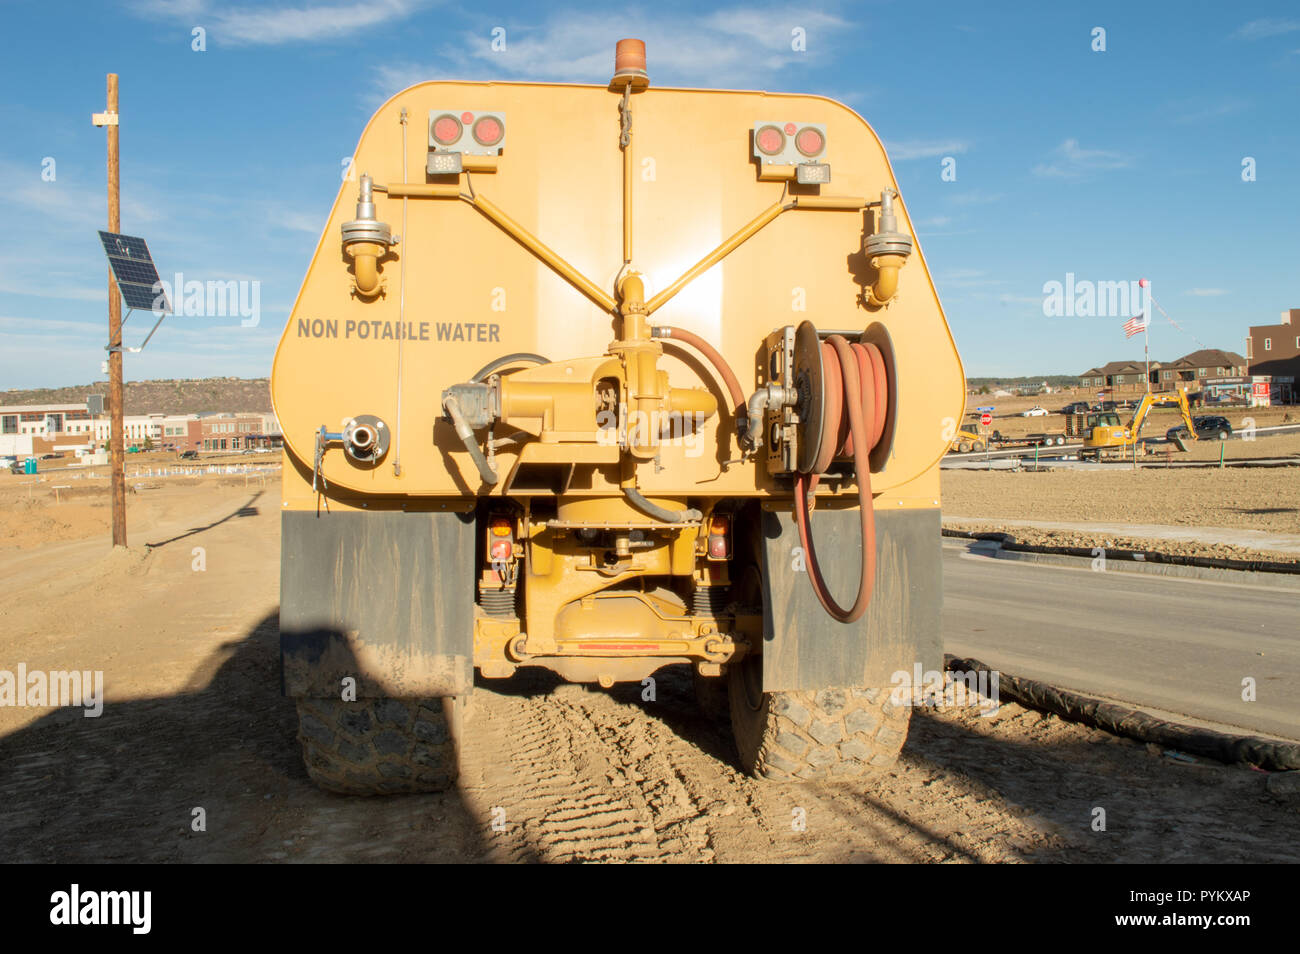 Castle Rock, Colorado / Estados Unidos - 28 de octubre de 2018: Non-Potable camión cisterna de agua en el sitio de construcción Foto de stock